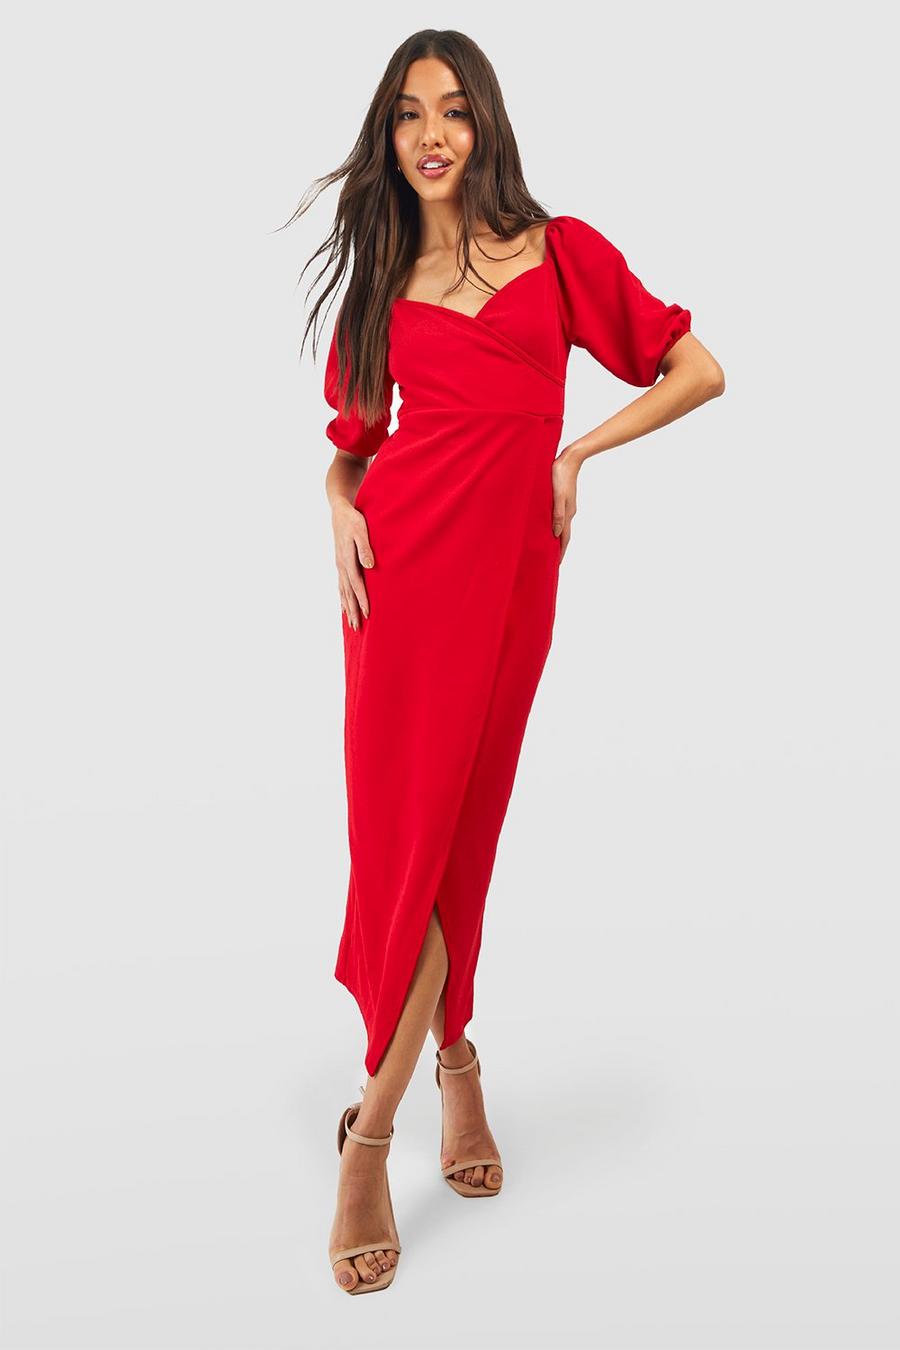 Red Midiklänning i omlottmodell med puffärm